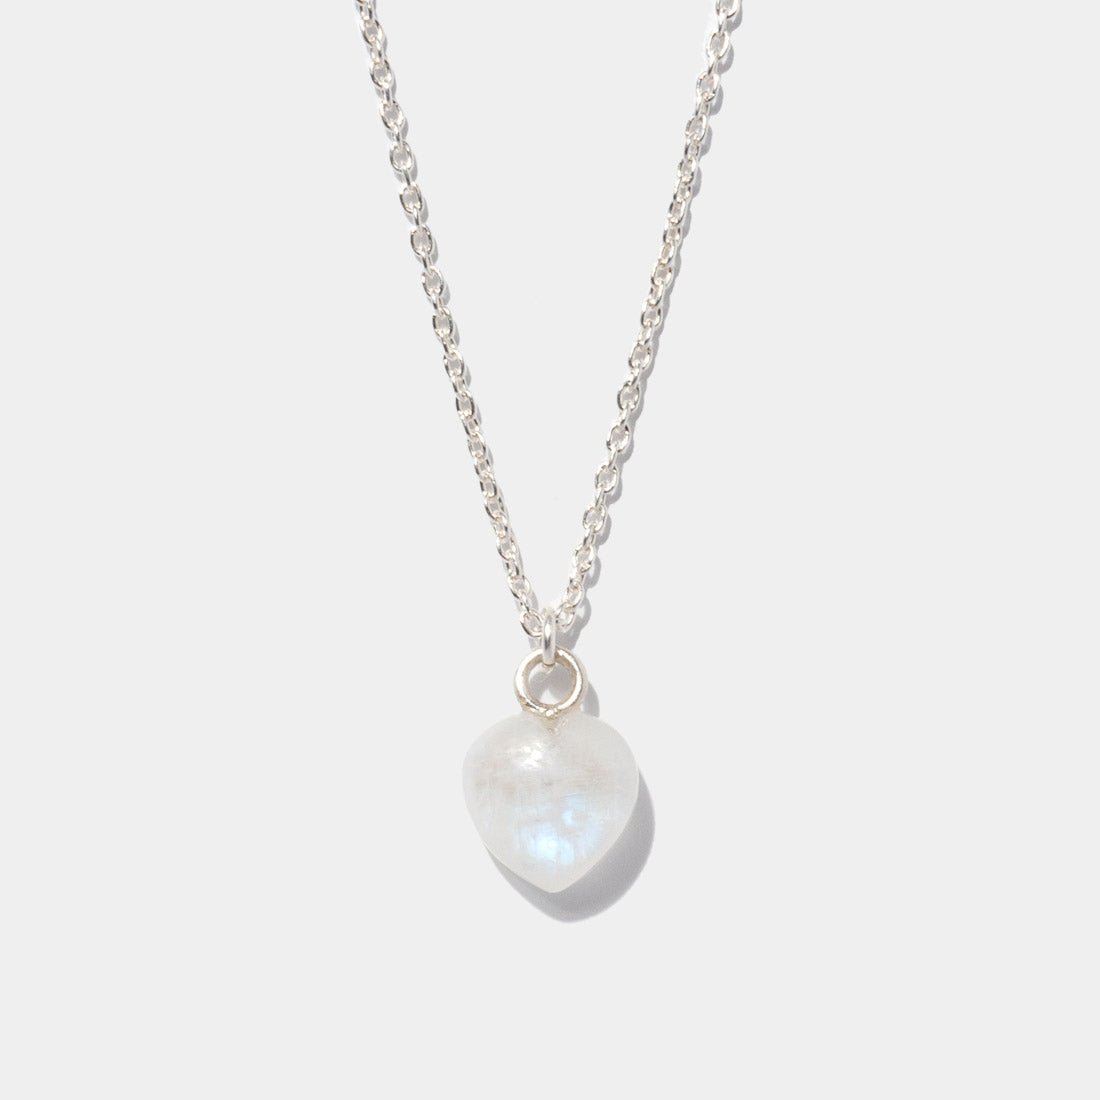 Halskette Mini Heart Moonstone Silber - Fleurs des Prés Jewelry